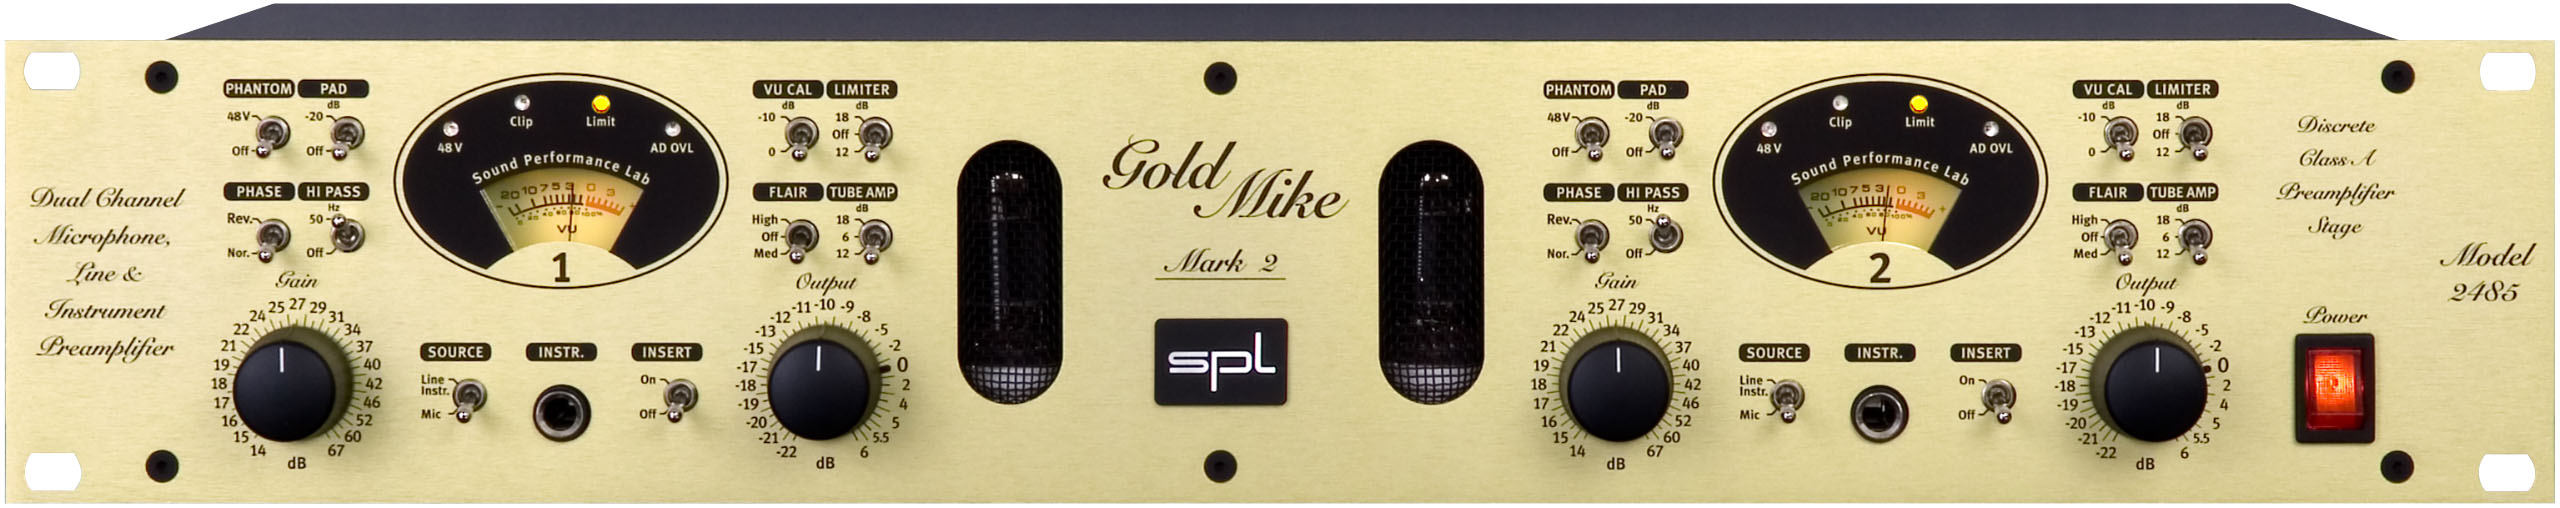 GoldMike Mk2